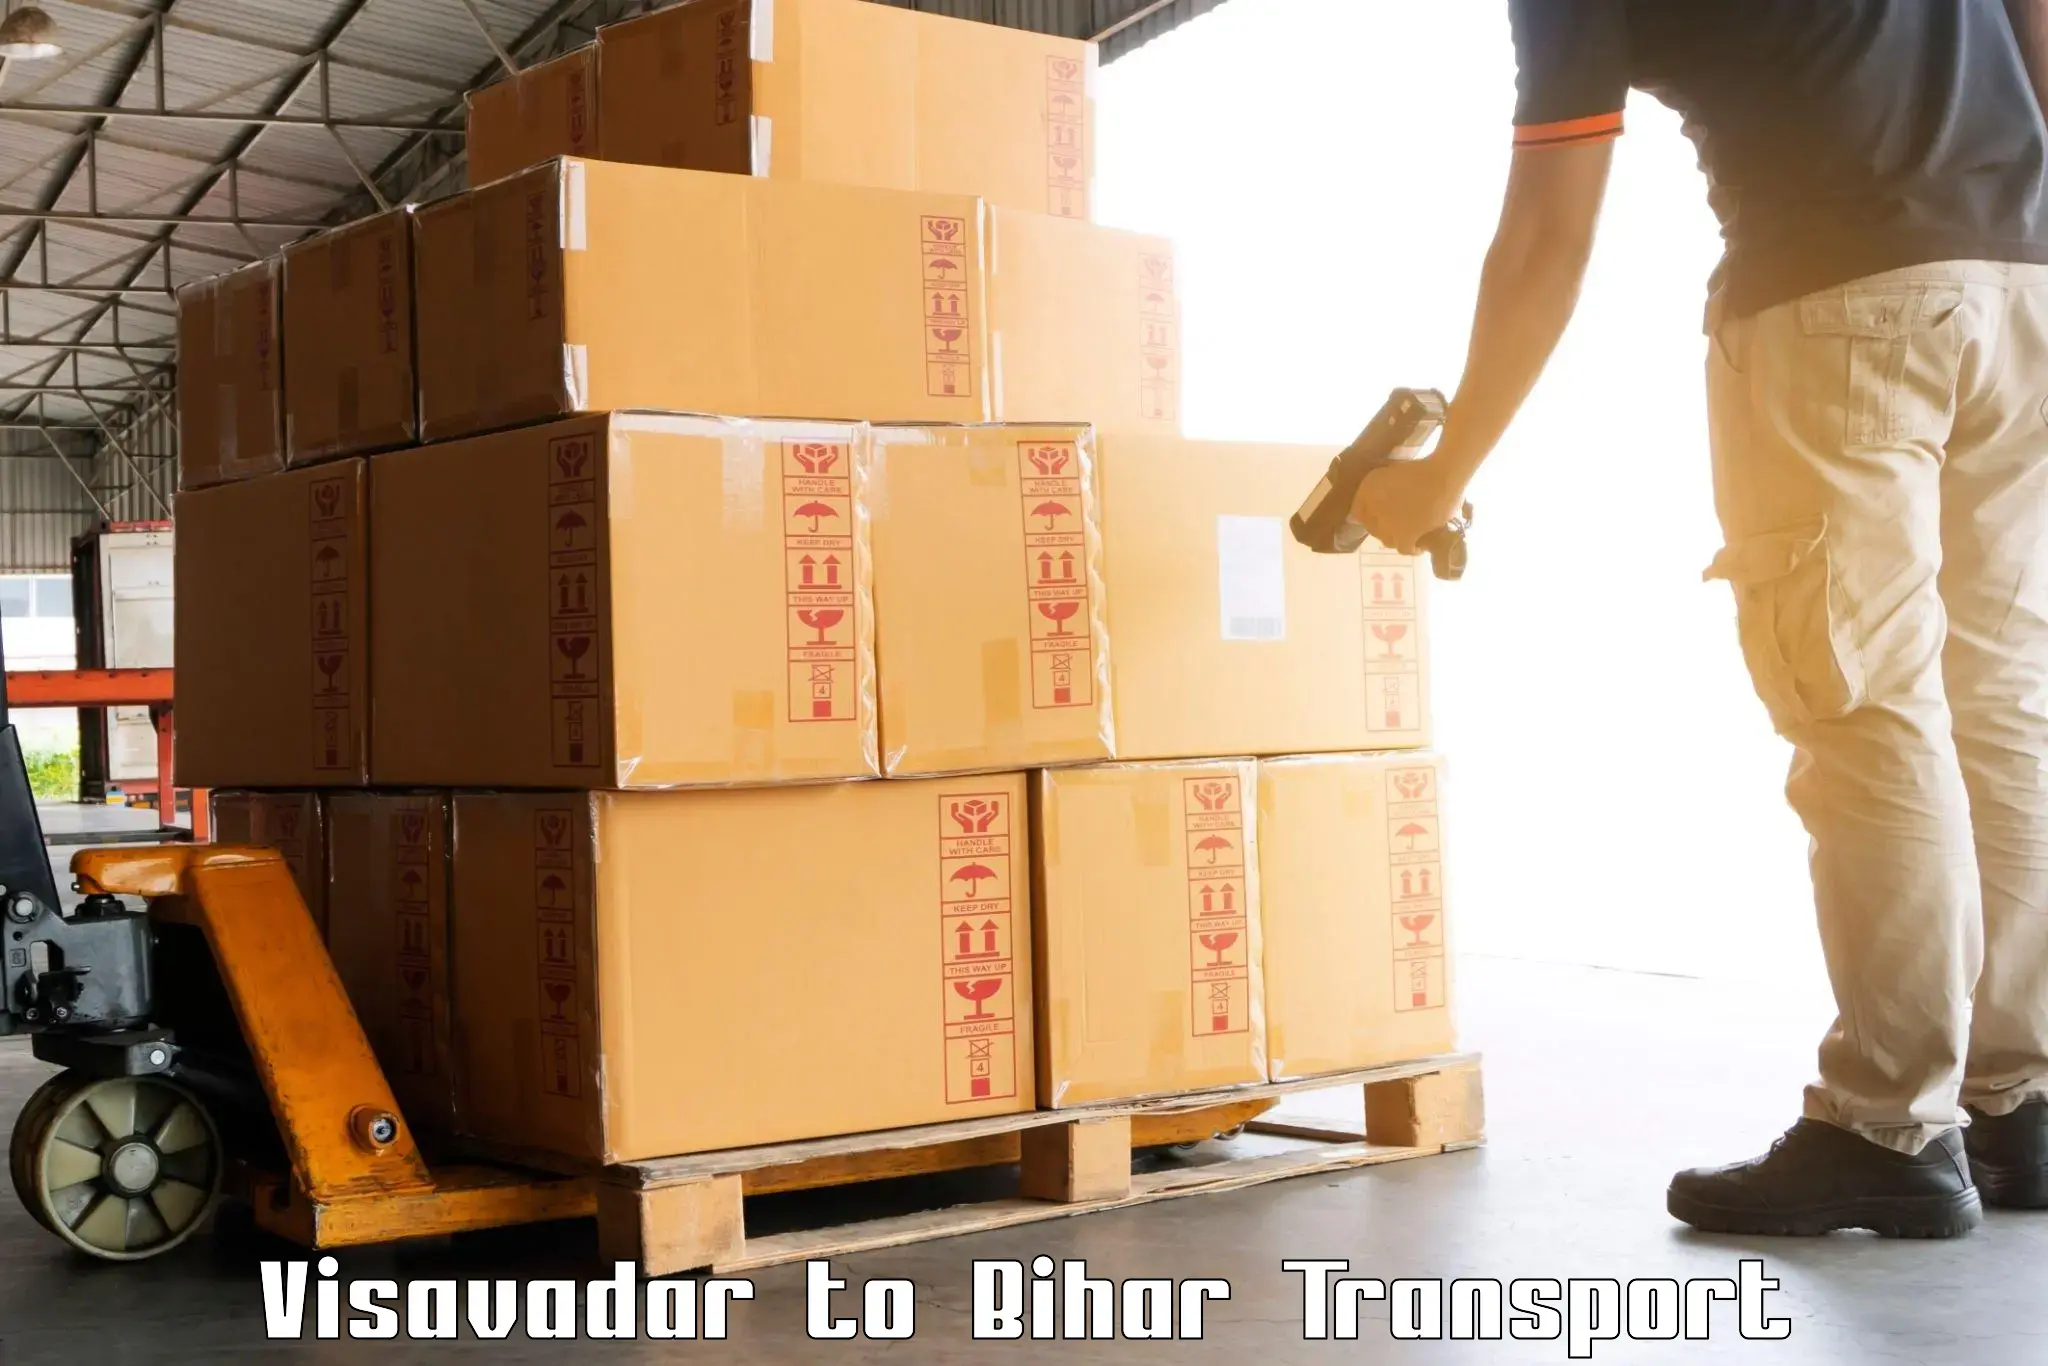 Online transport Visavadar to Bihar